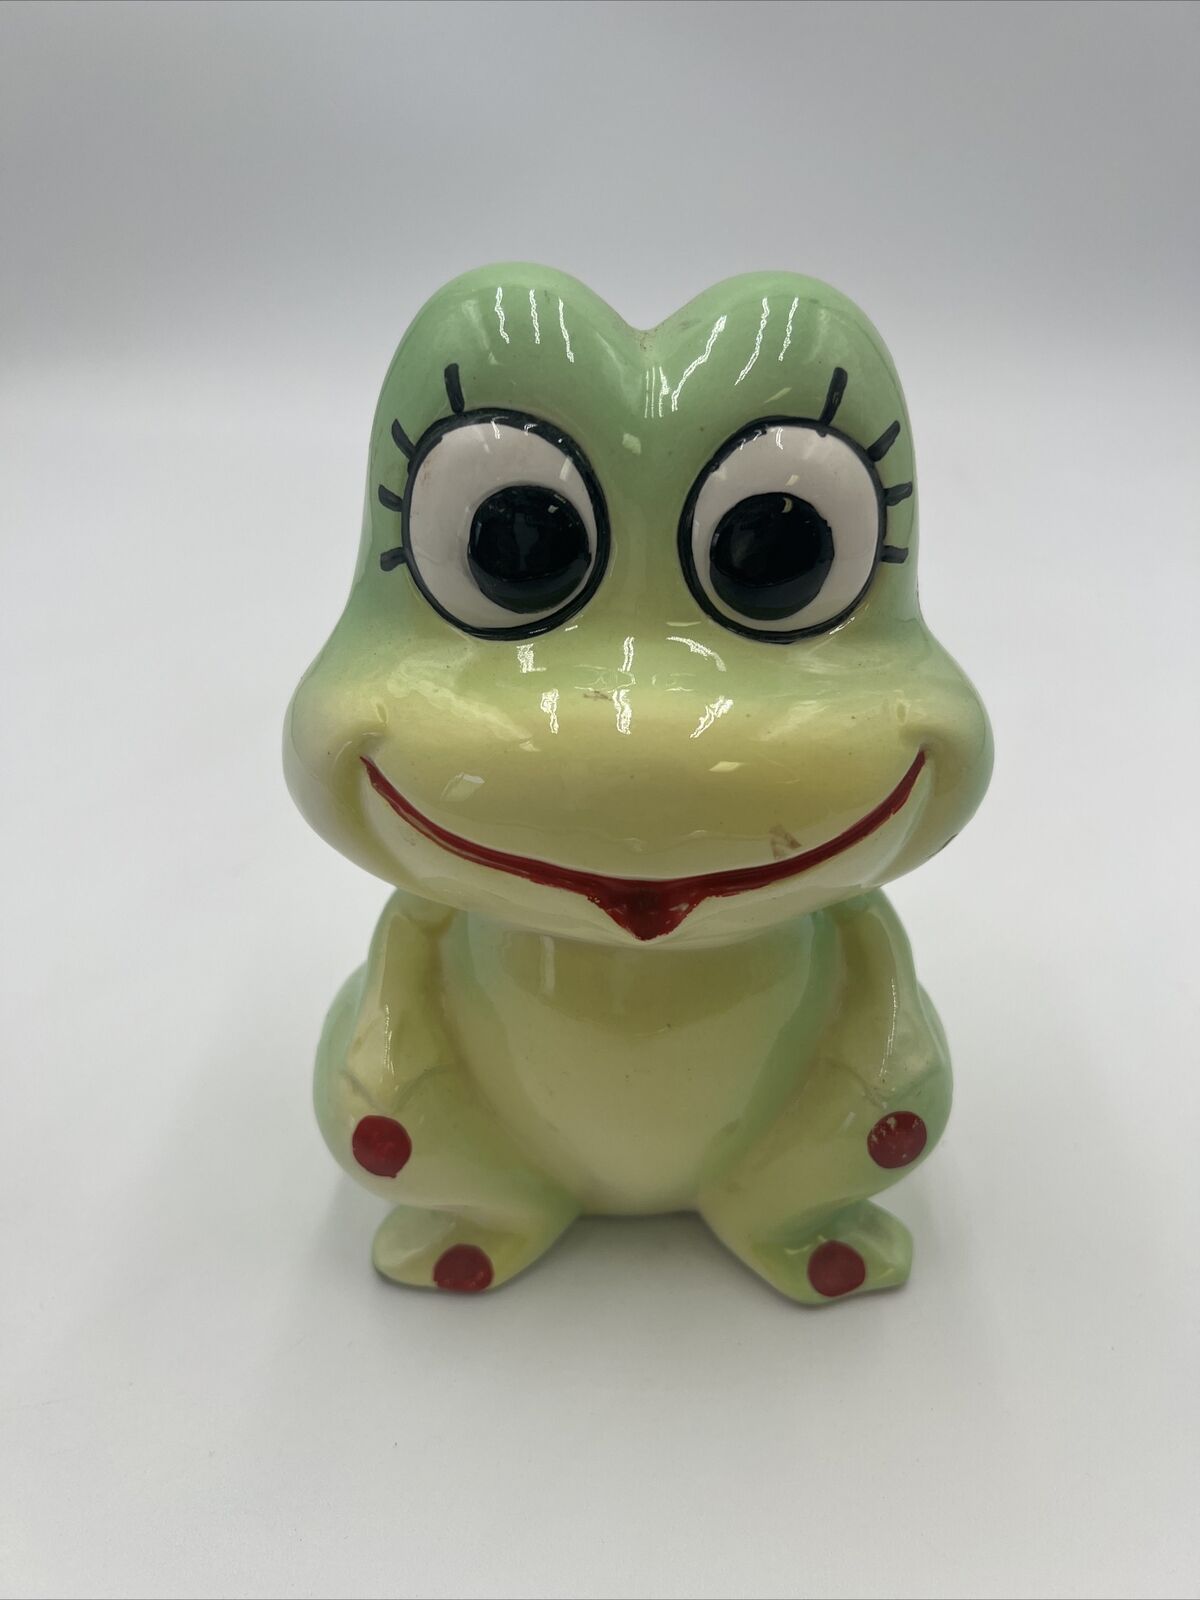 Vintage, 1970s Big Eyed Frog Ceramic Bank 6.5